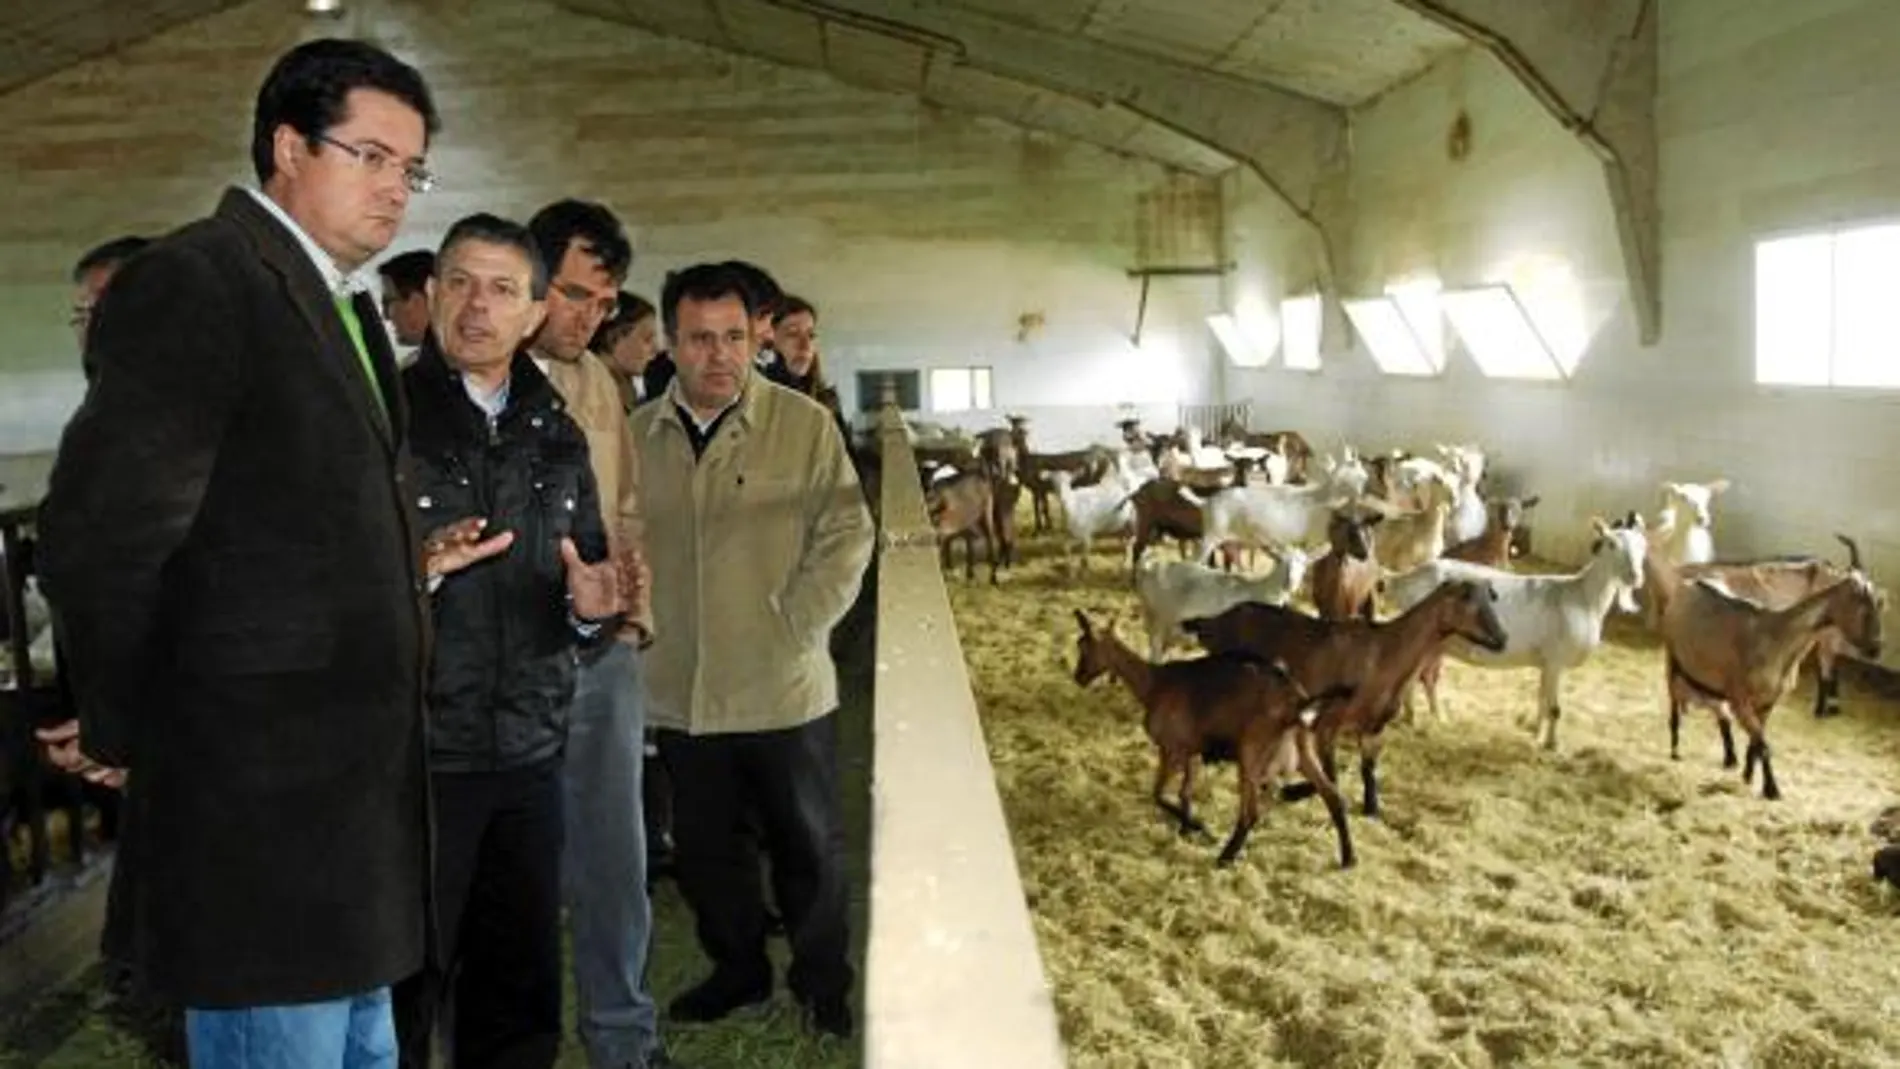 López escucha al procurador socialista Manuel Fuentes durante su visita a una explotación ganadera en Tábara